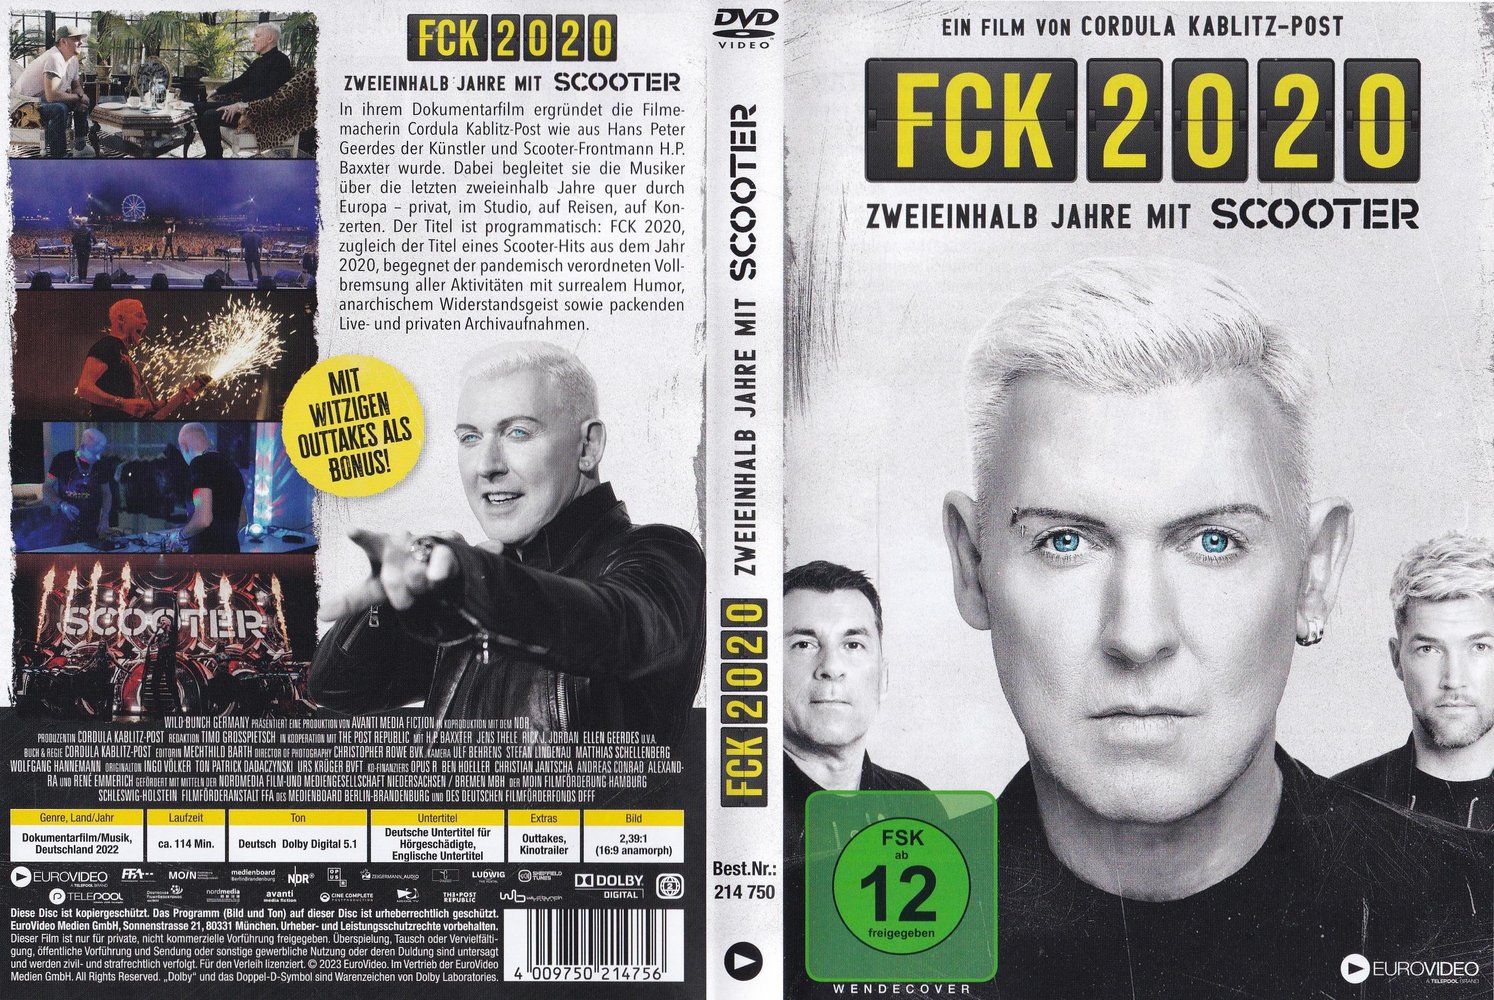 FCK 2020: DVD, Blu-ray oder VoD leihen - VIDEOBUSTER